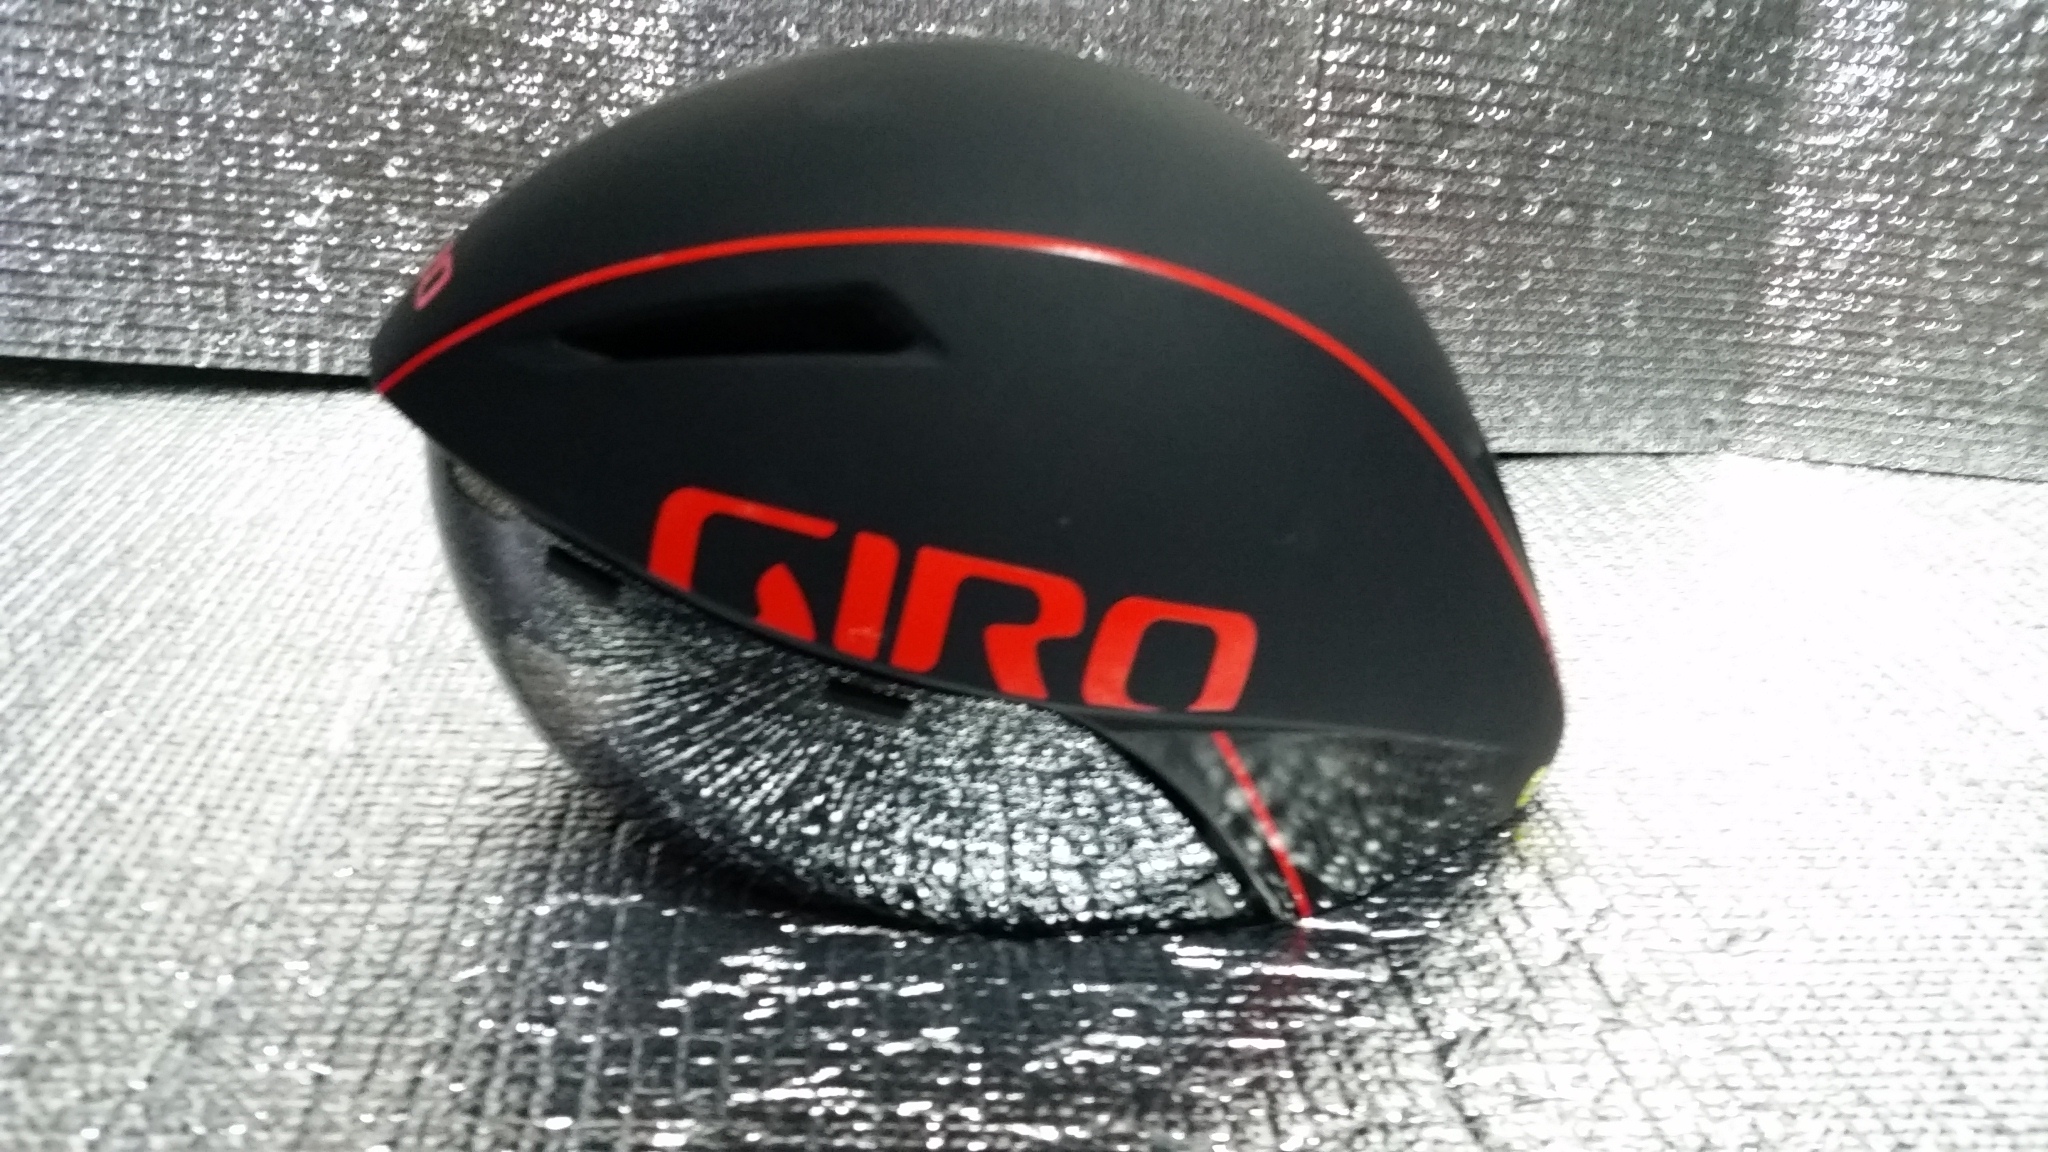  TTヘルメットを超えた空力性能の「エアロR1」